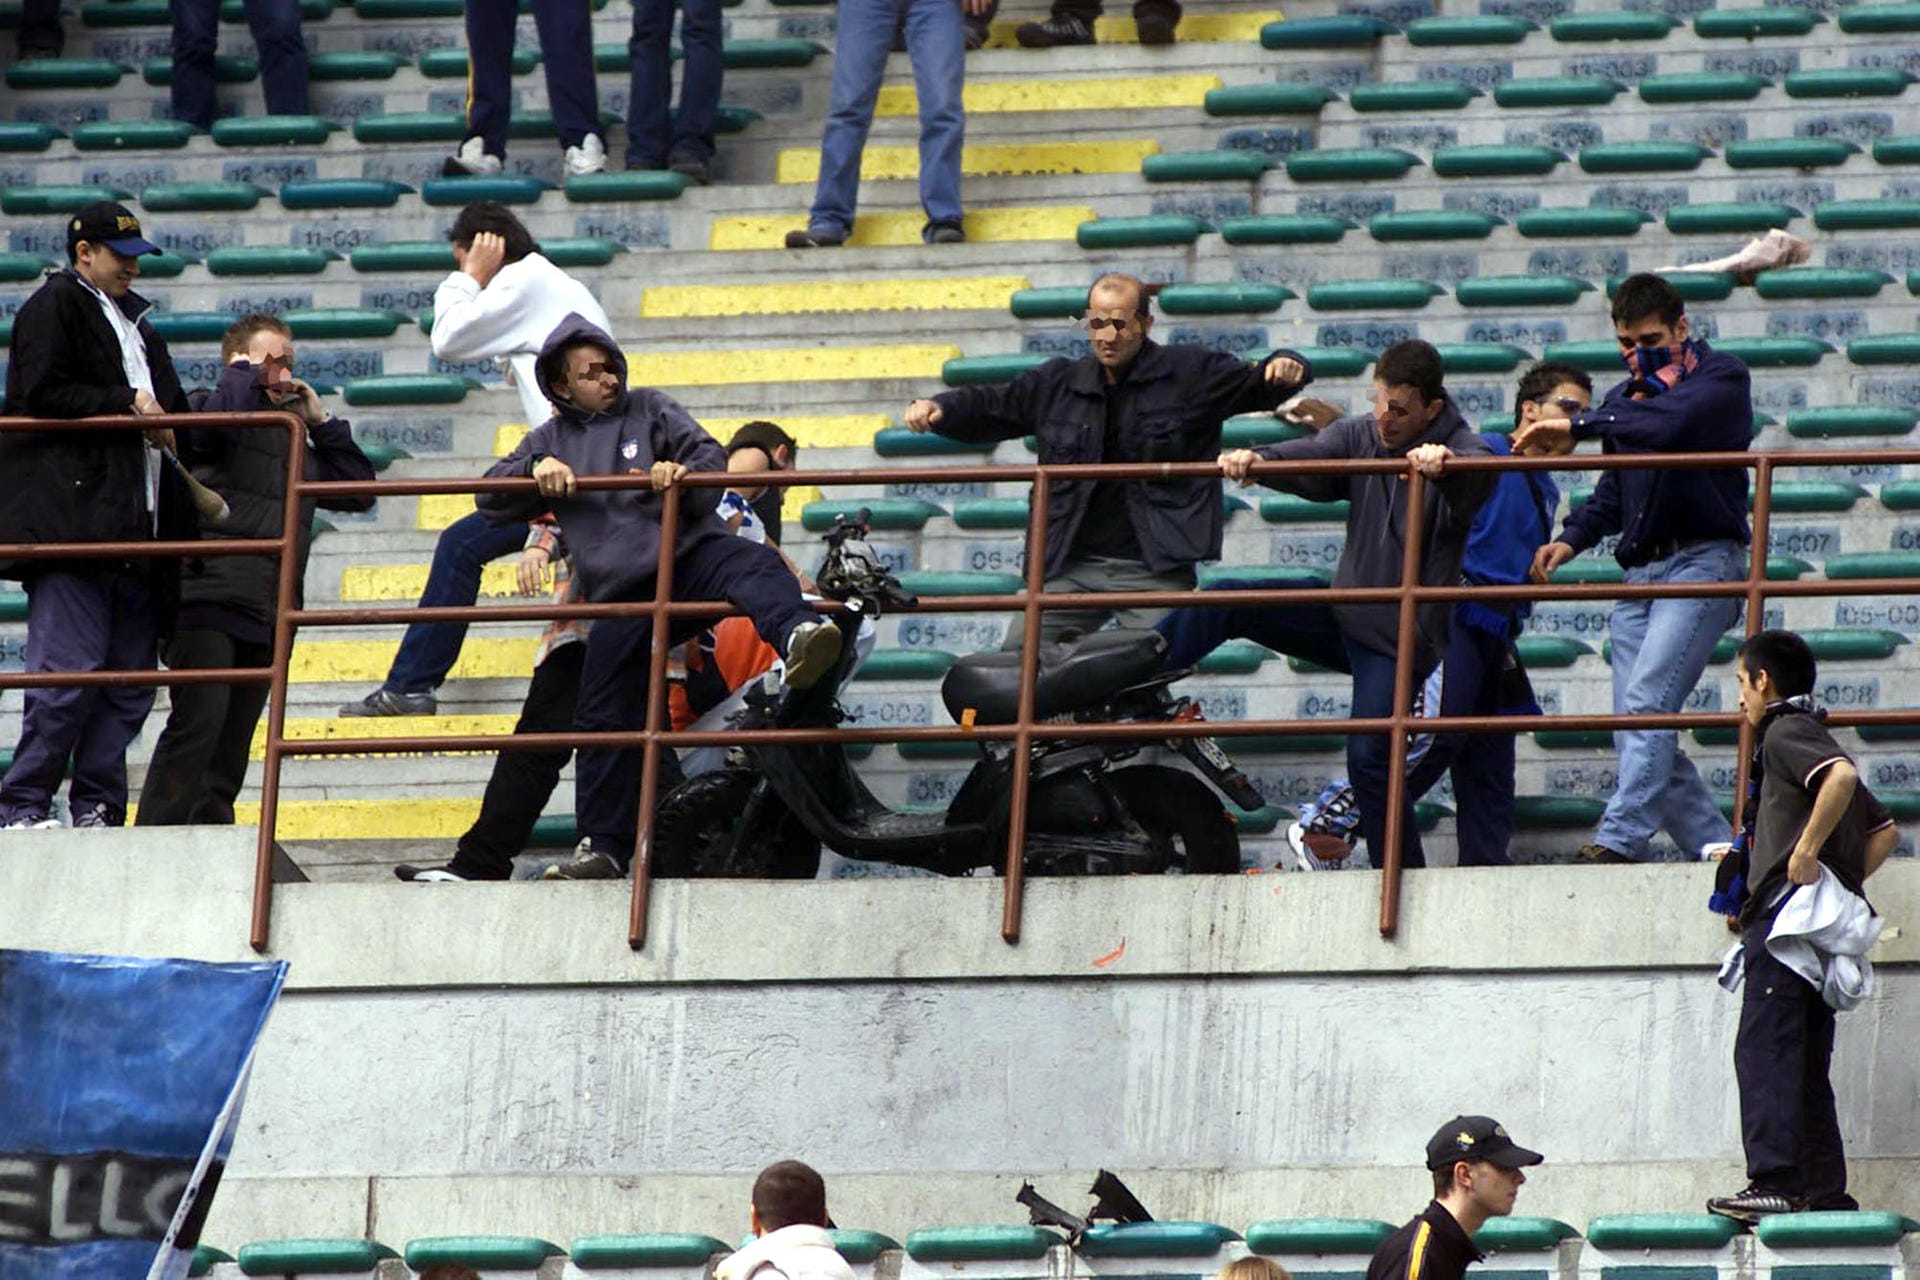 Am 6. Mai 2001 werfen Fans von Inter Mailand beim Heimspiel gegen Atalanta Bergamo eine Vespa vom Oberrang. Verletzt wurde zum Glück niemand. Der Roller wurde vor der Partie einem Bergamo-Fan gestohlen.